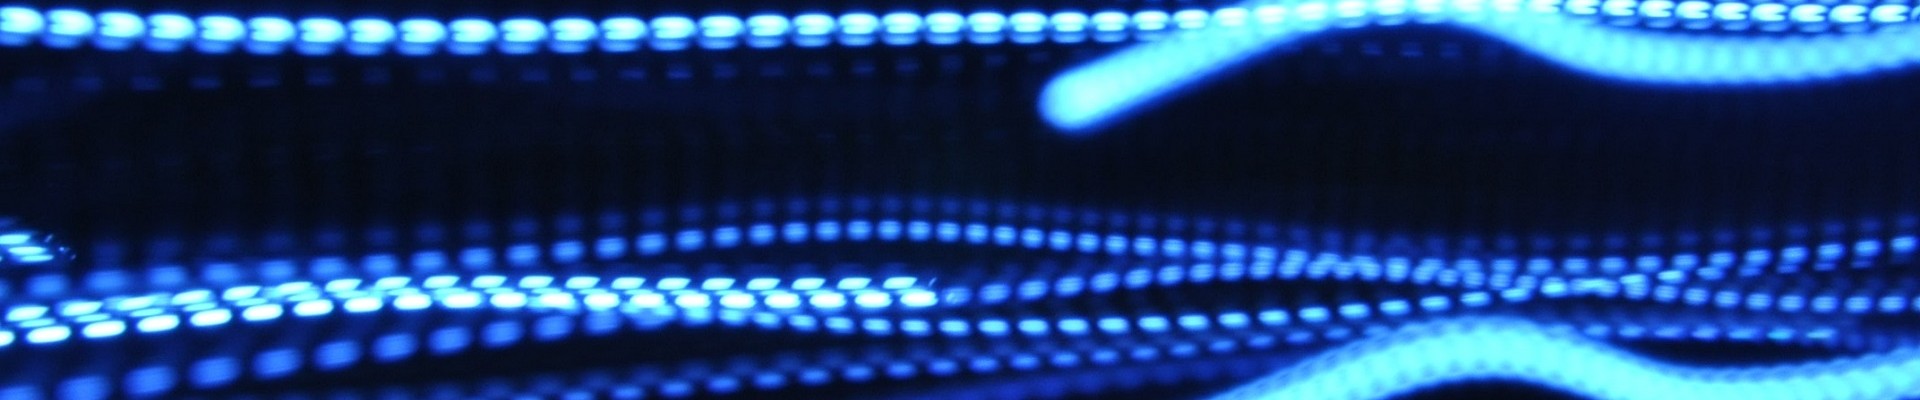 Hellblaue elektrische Lichtfäden vor dunkelblauem Hintergrund